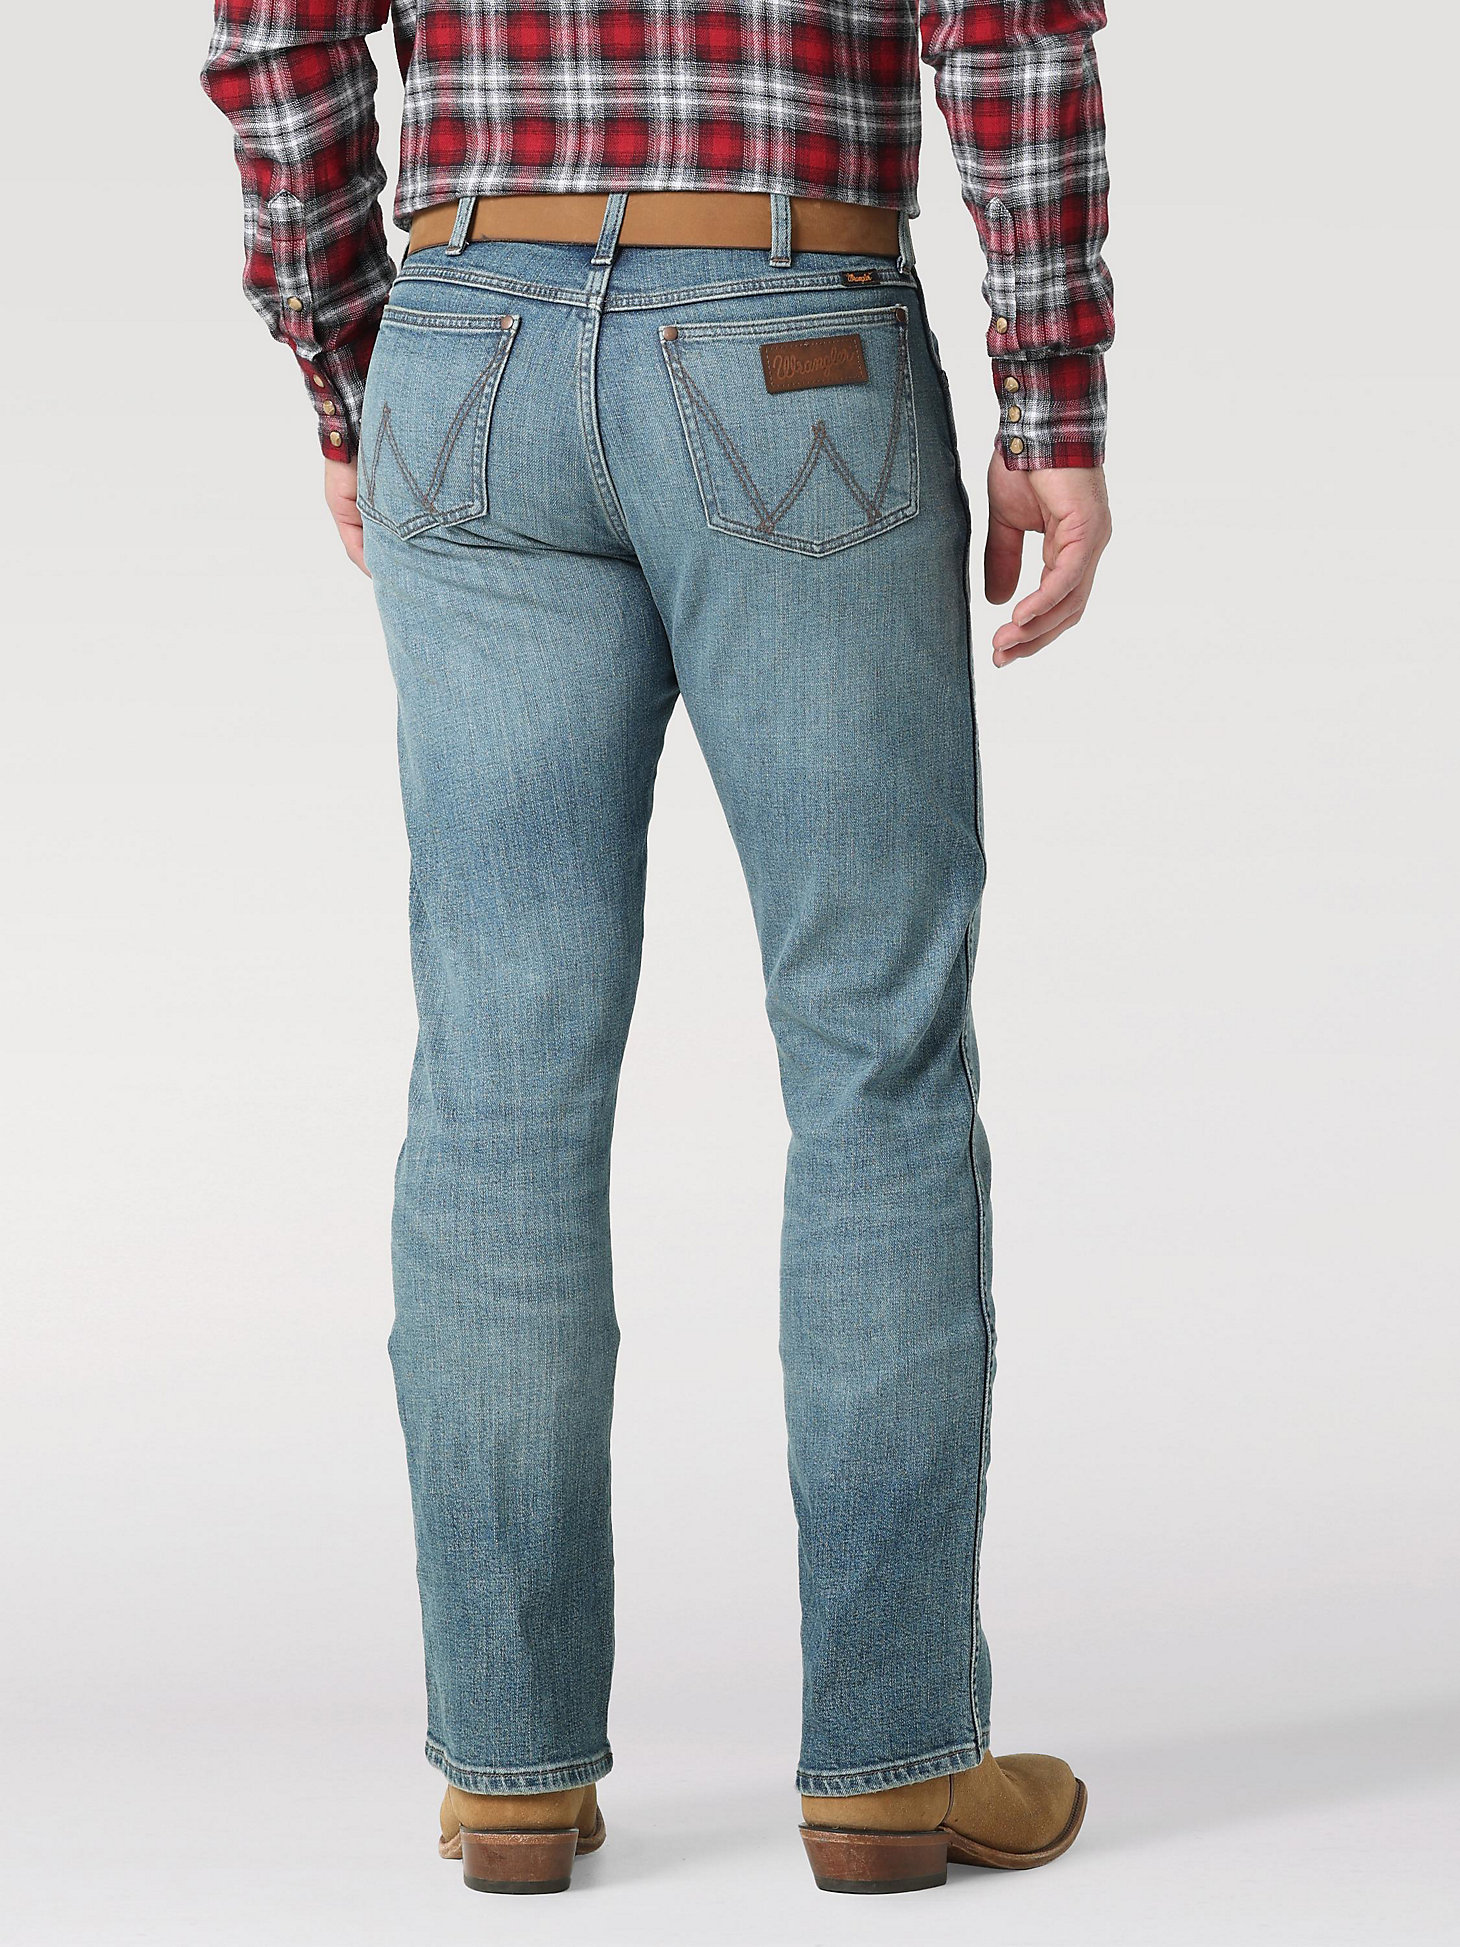 The Wrangler Retro® Premium Jean: Men's Slim Boot in Valley alternative view 1